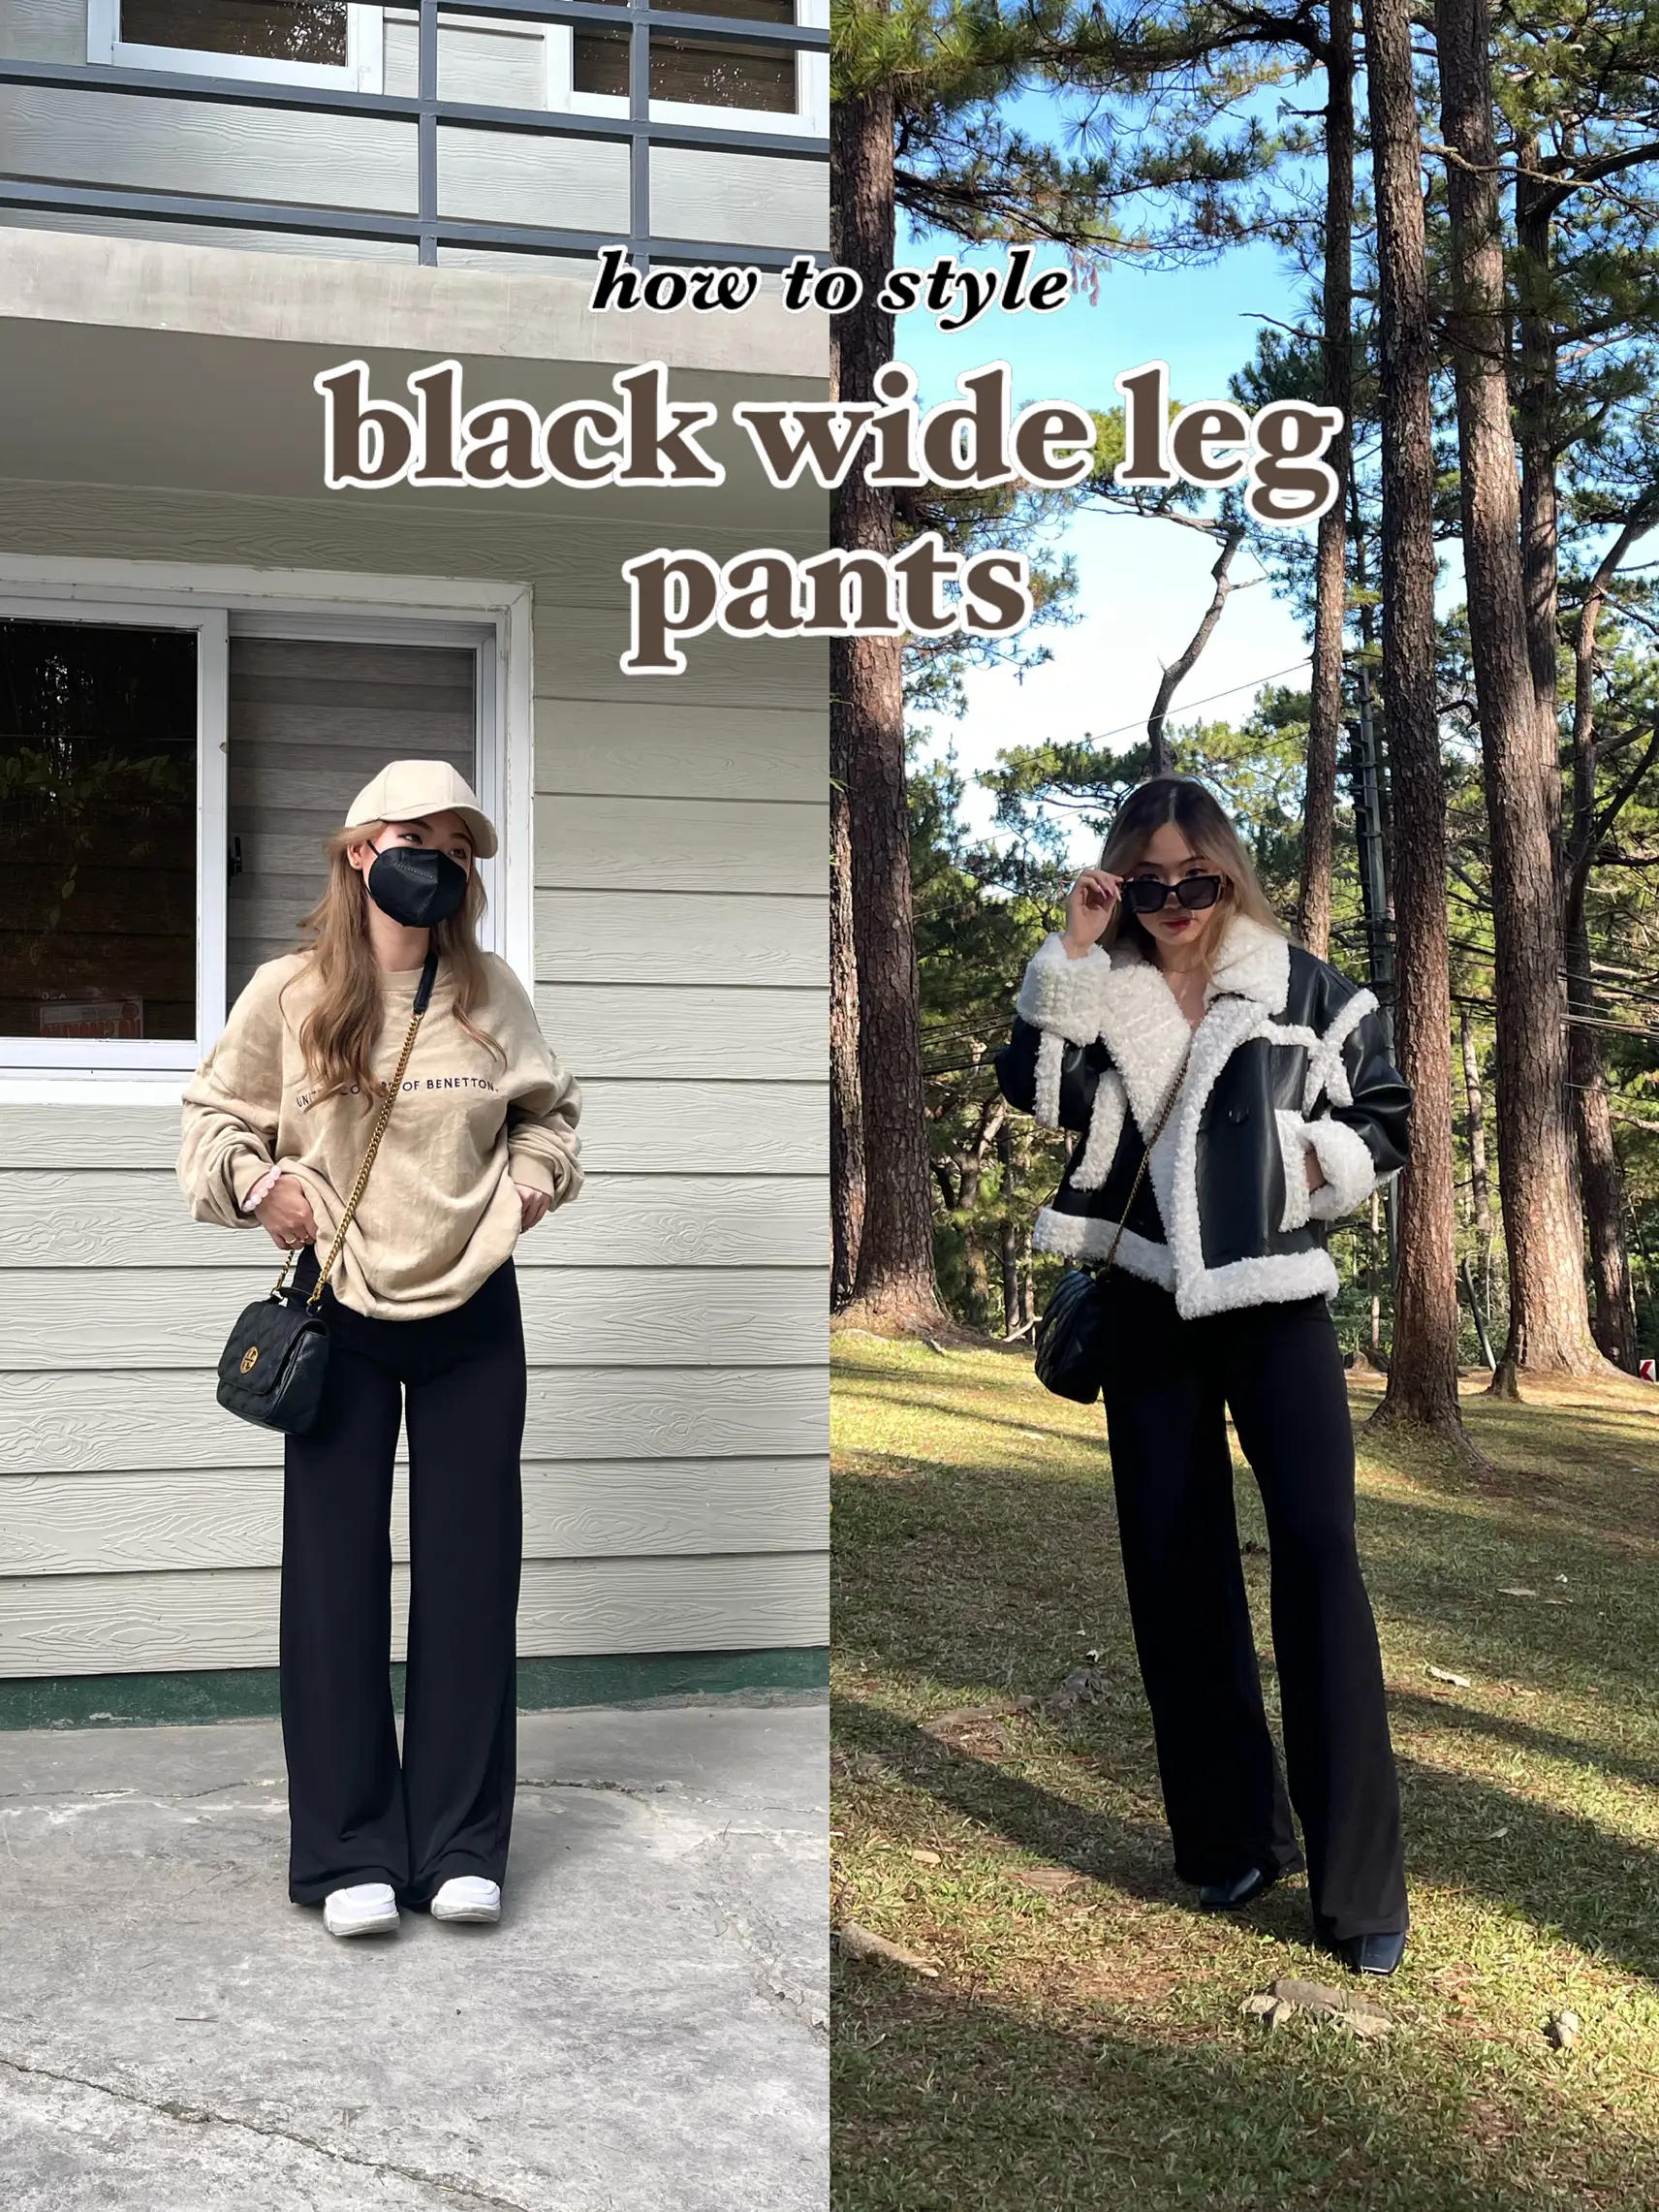 Wearing all black & wide leg jeans - Mademoiselle